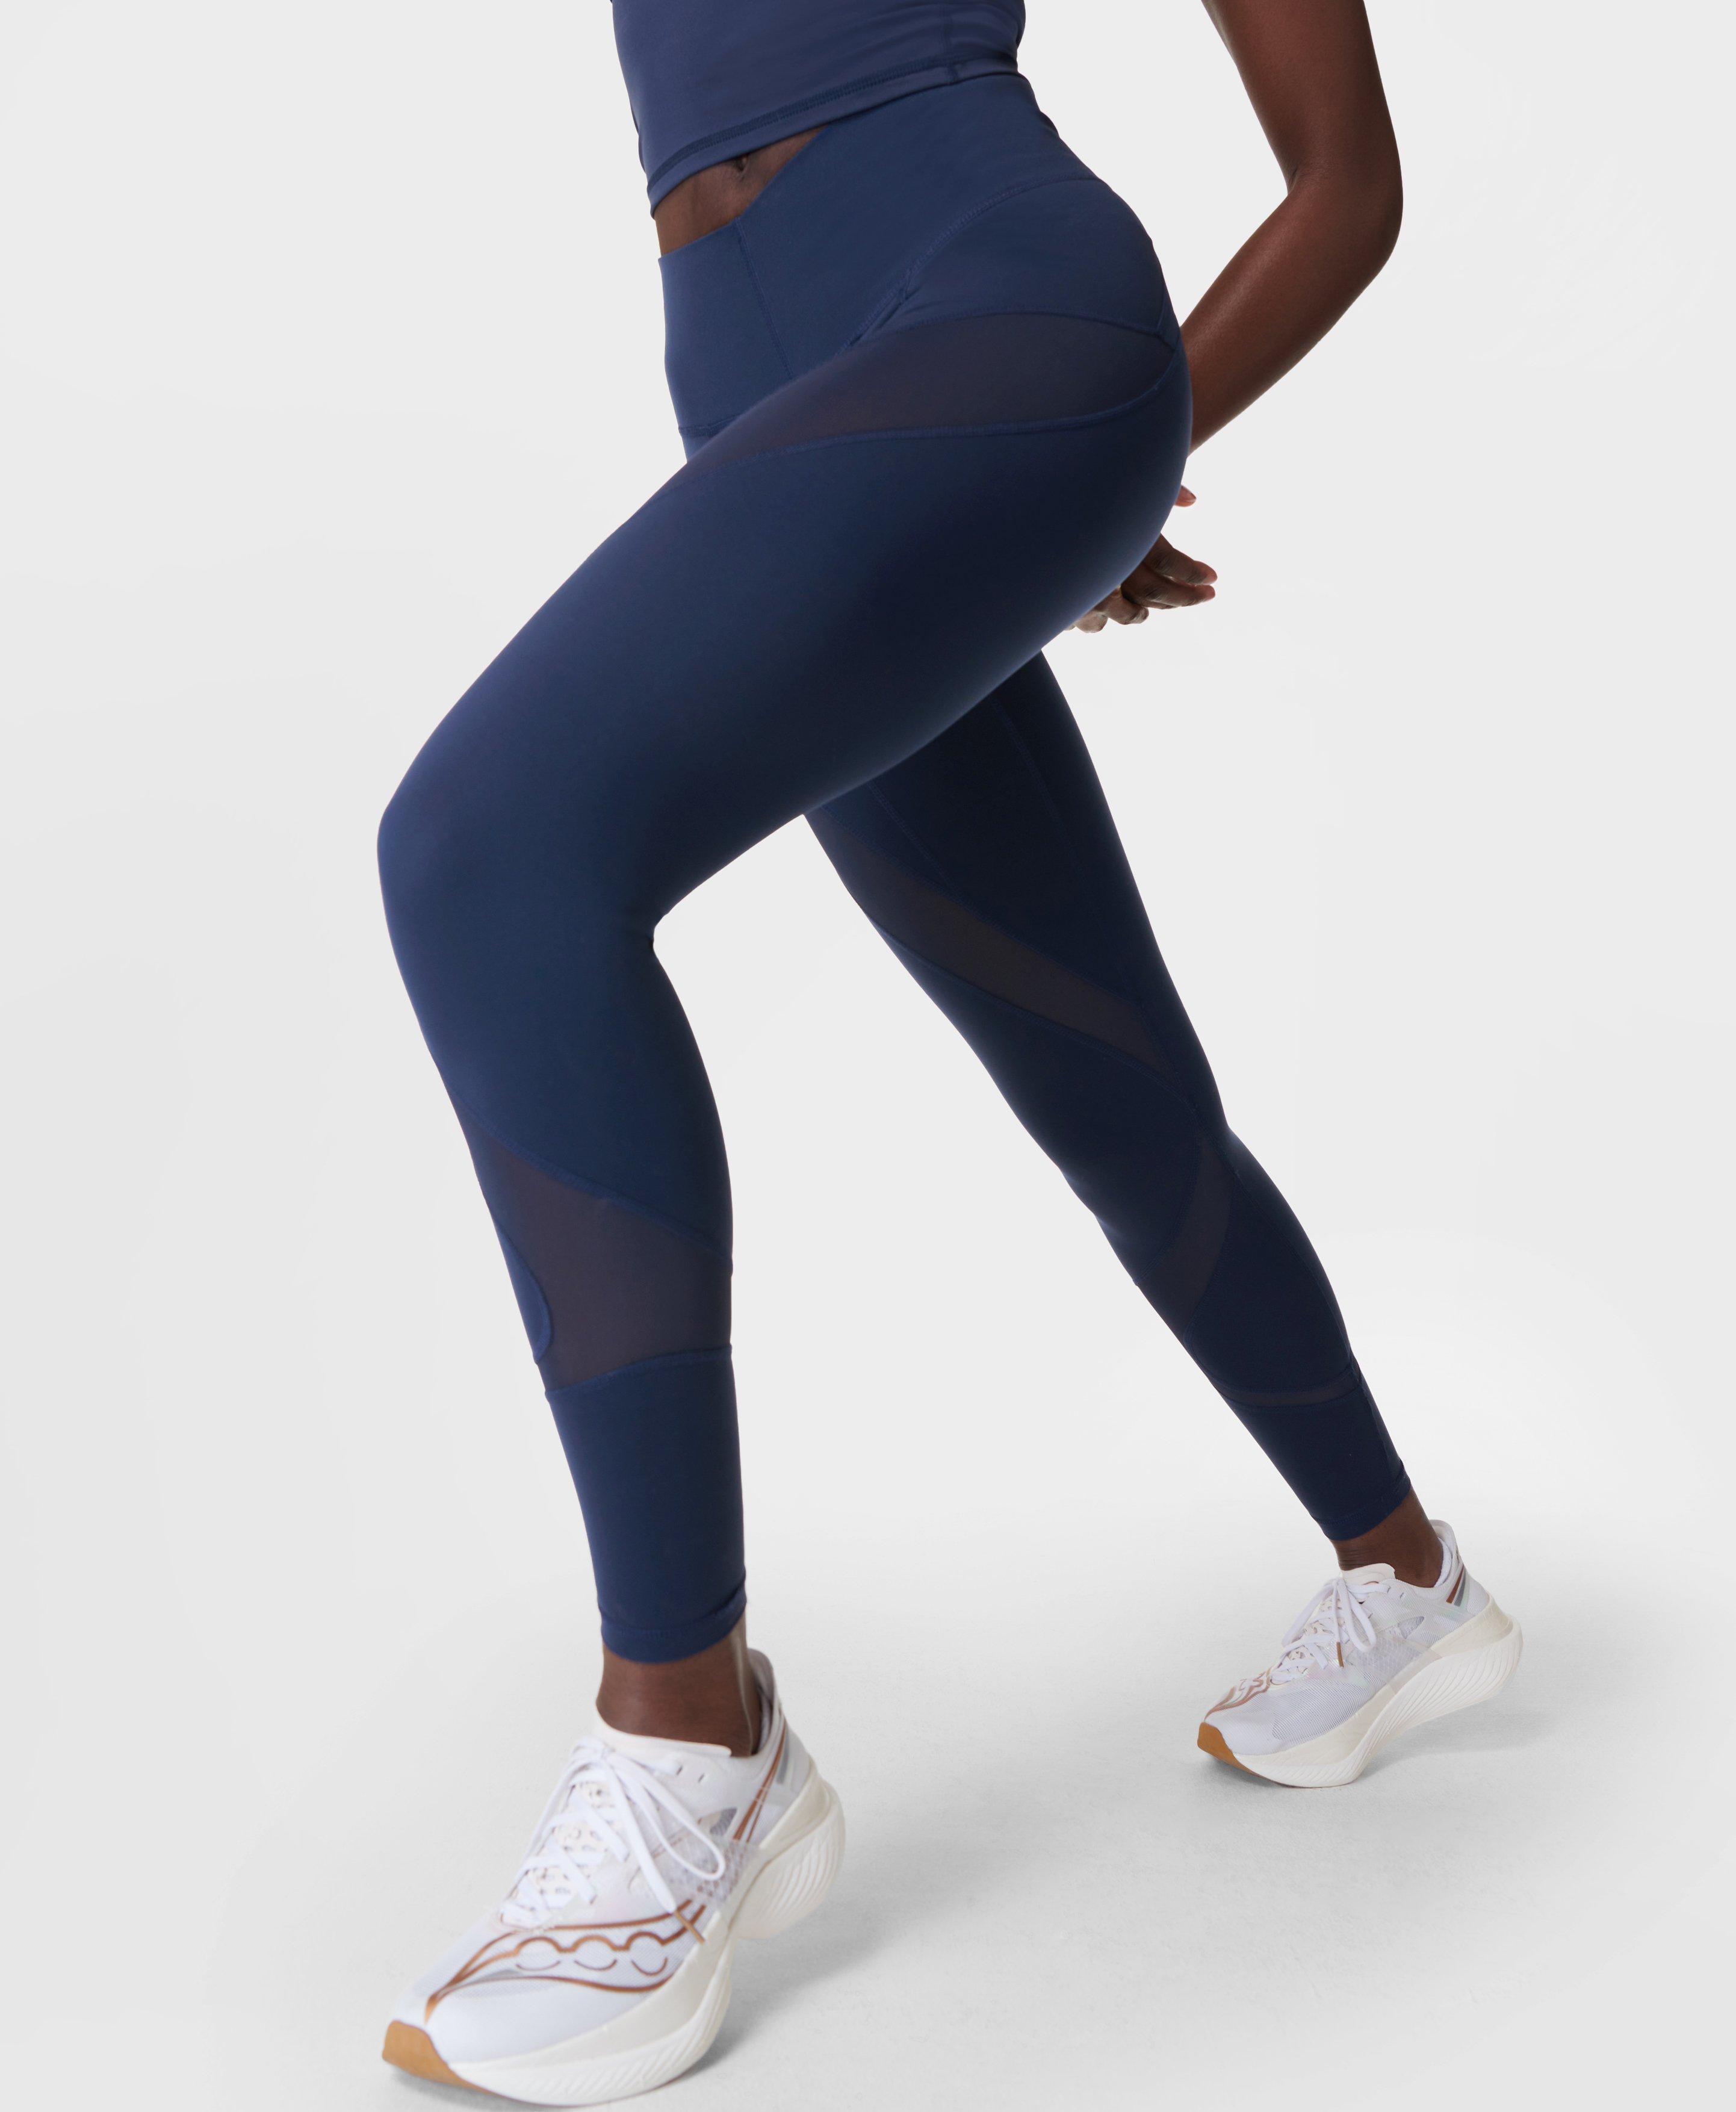 Power Illusion Mesh 7/8 Gym Leggings - Navy Blue, Women's Leggings